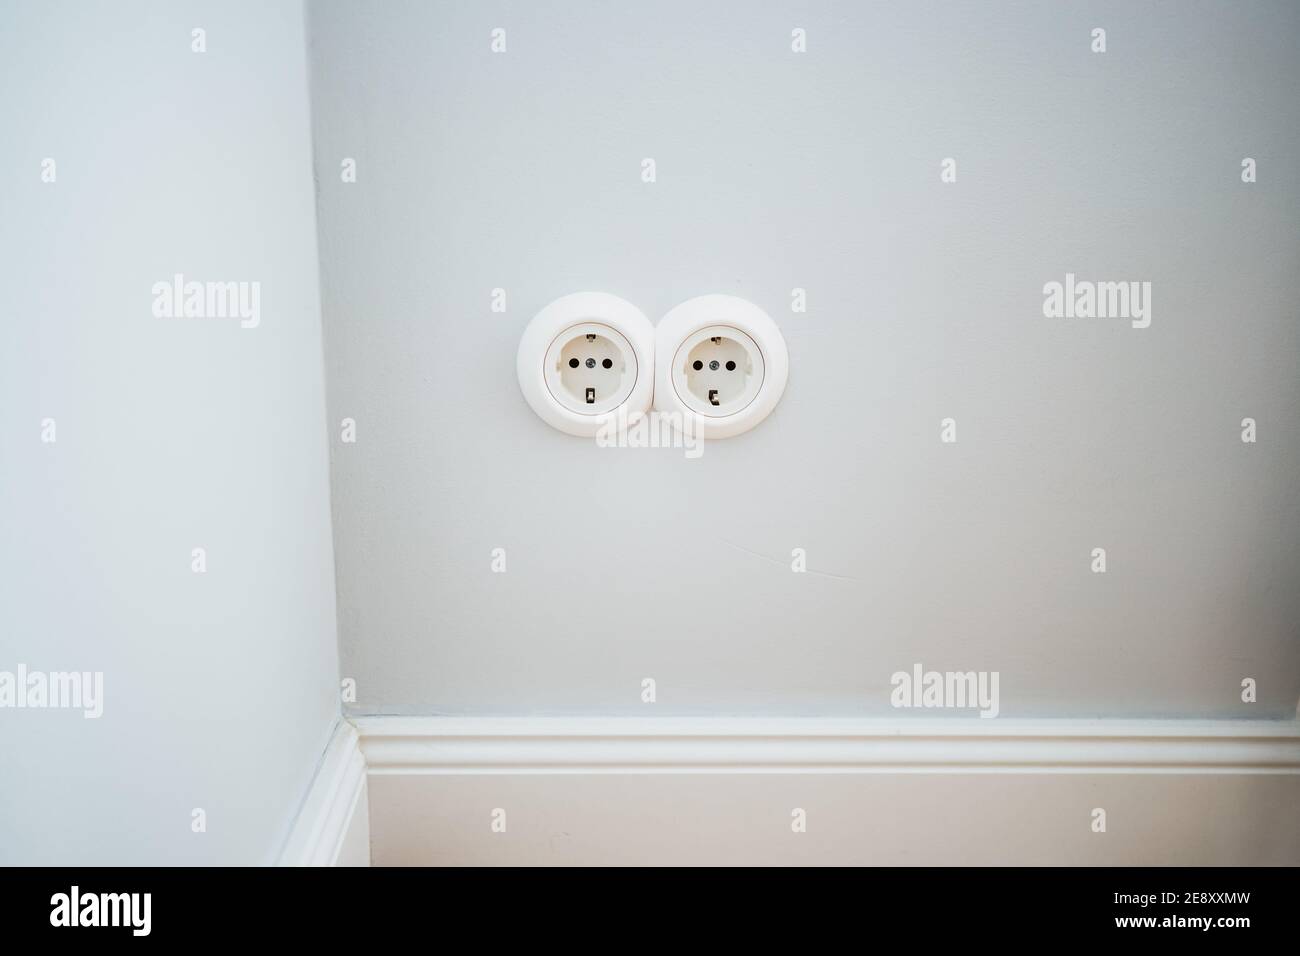 une prise électrique blanche sur un mur blanc Banque D'Images